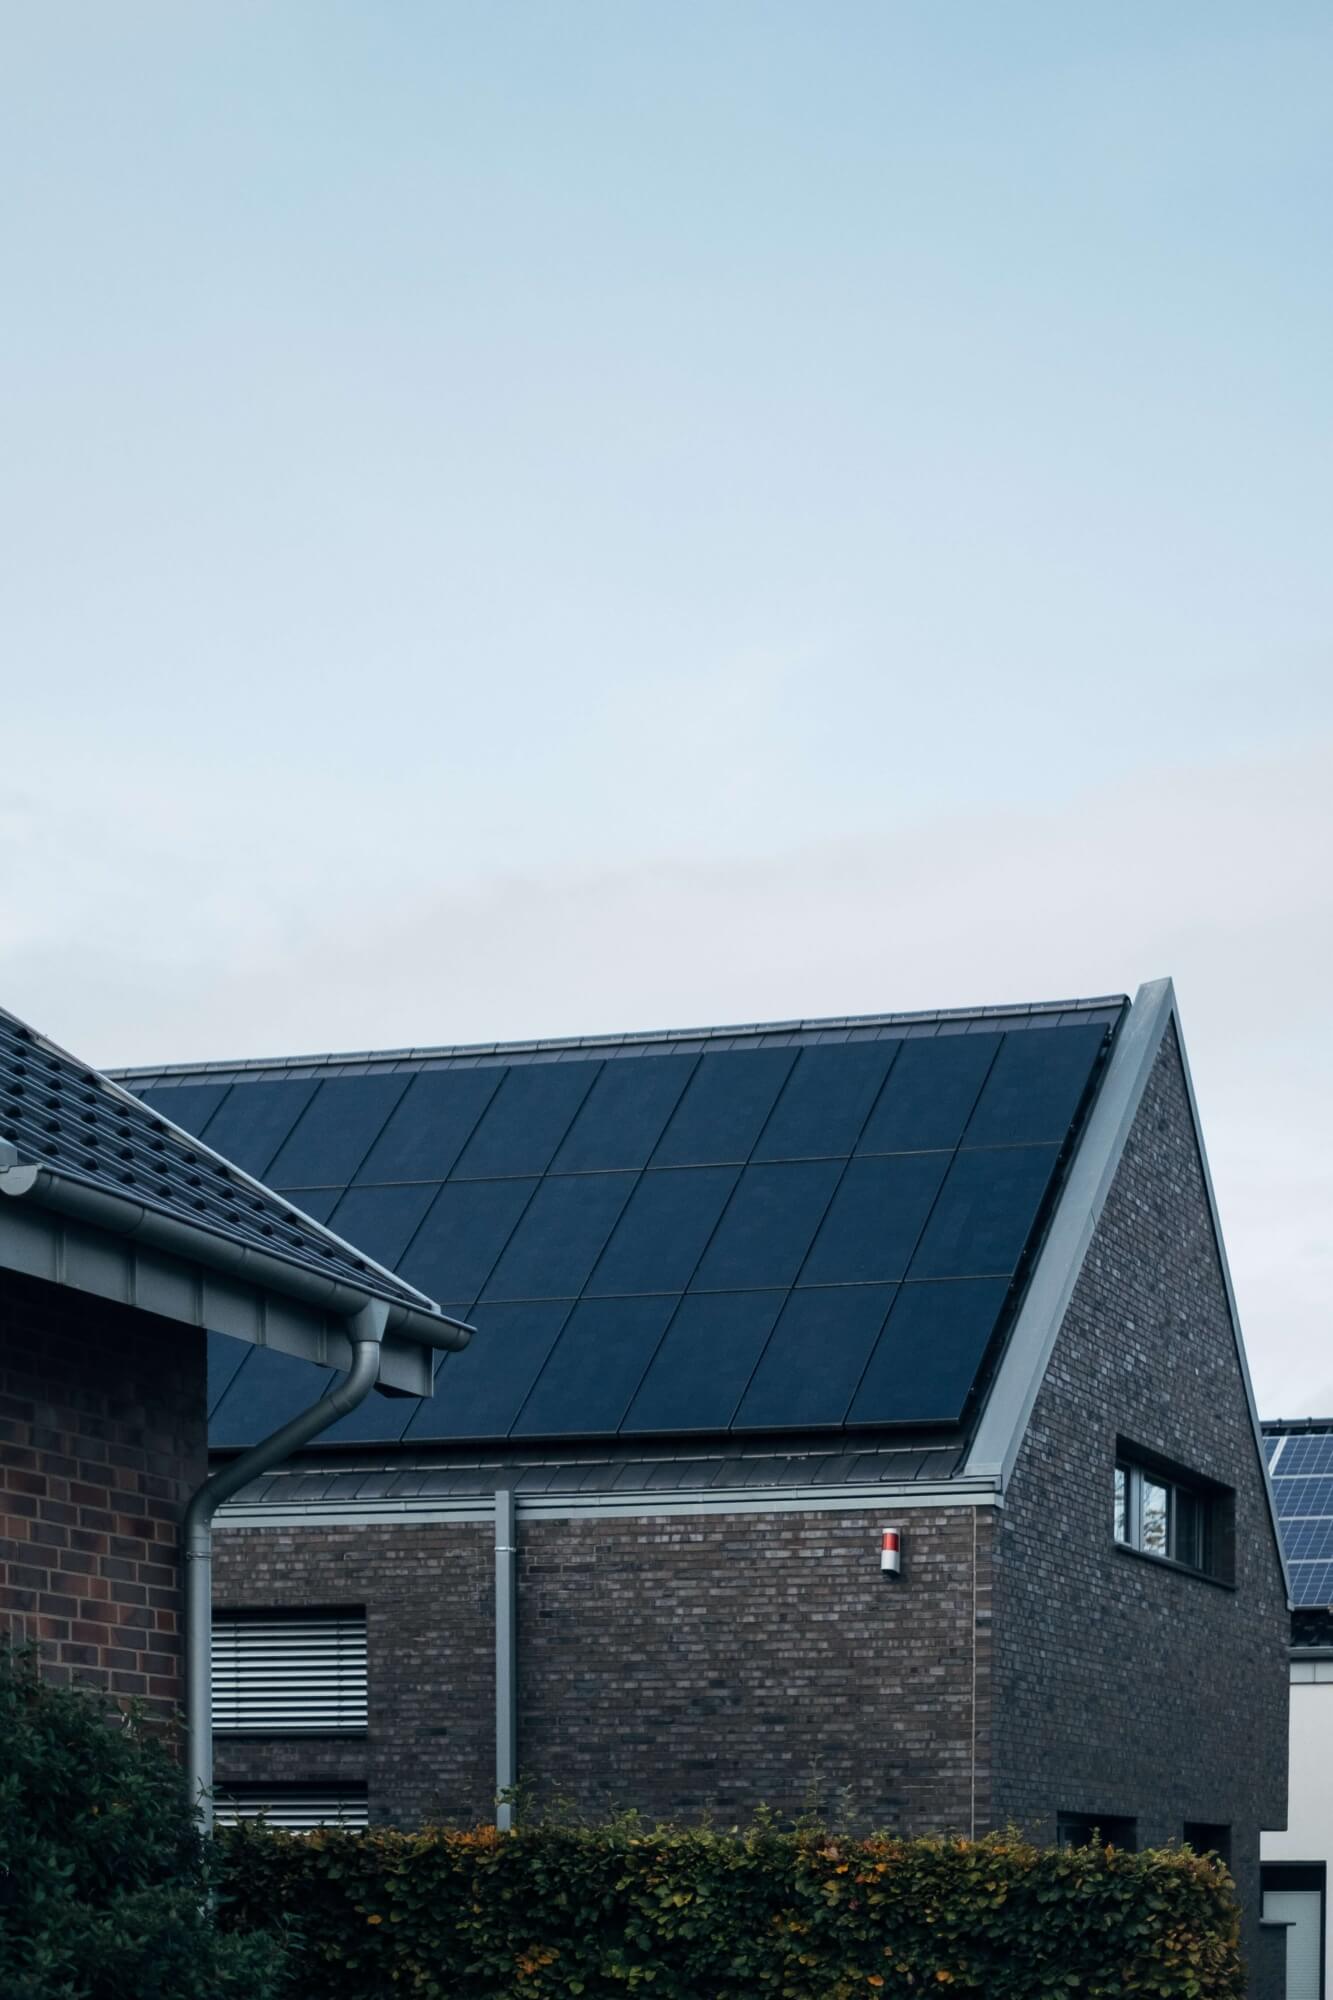 Varianty řešení fotovoltaiky pro bytové domy